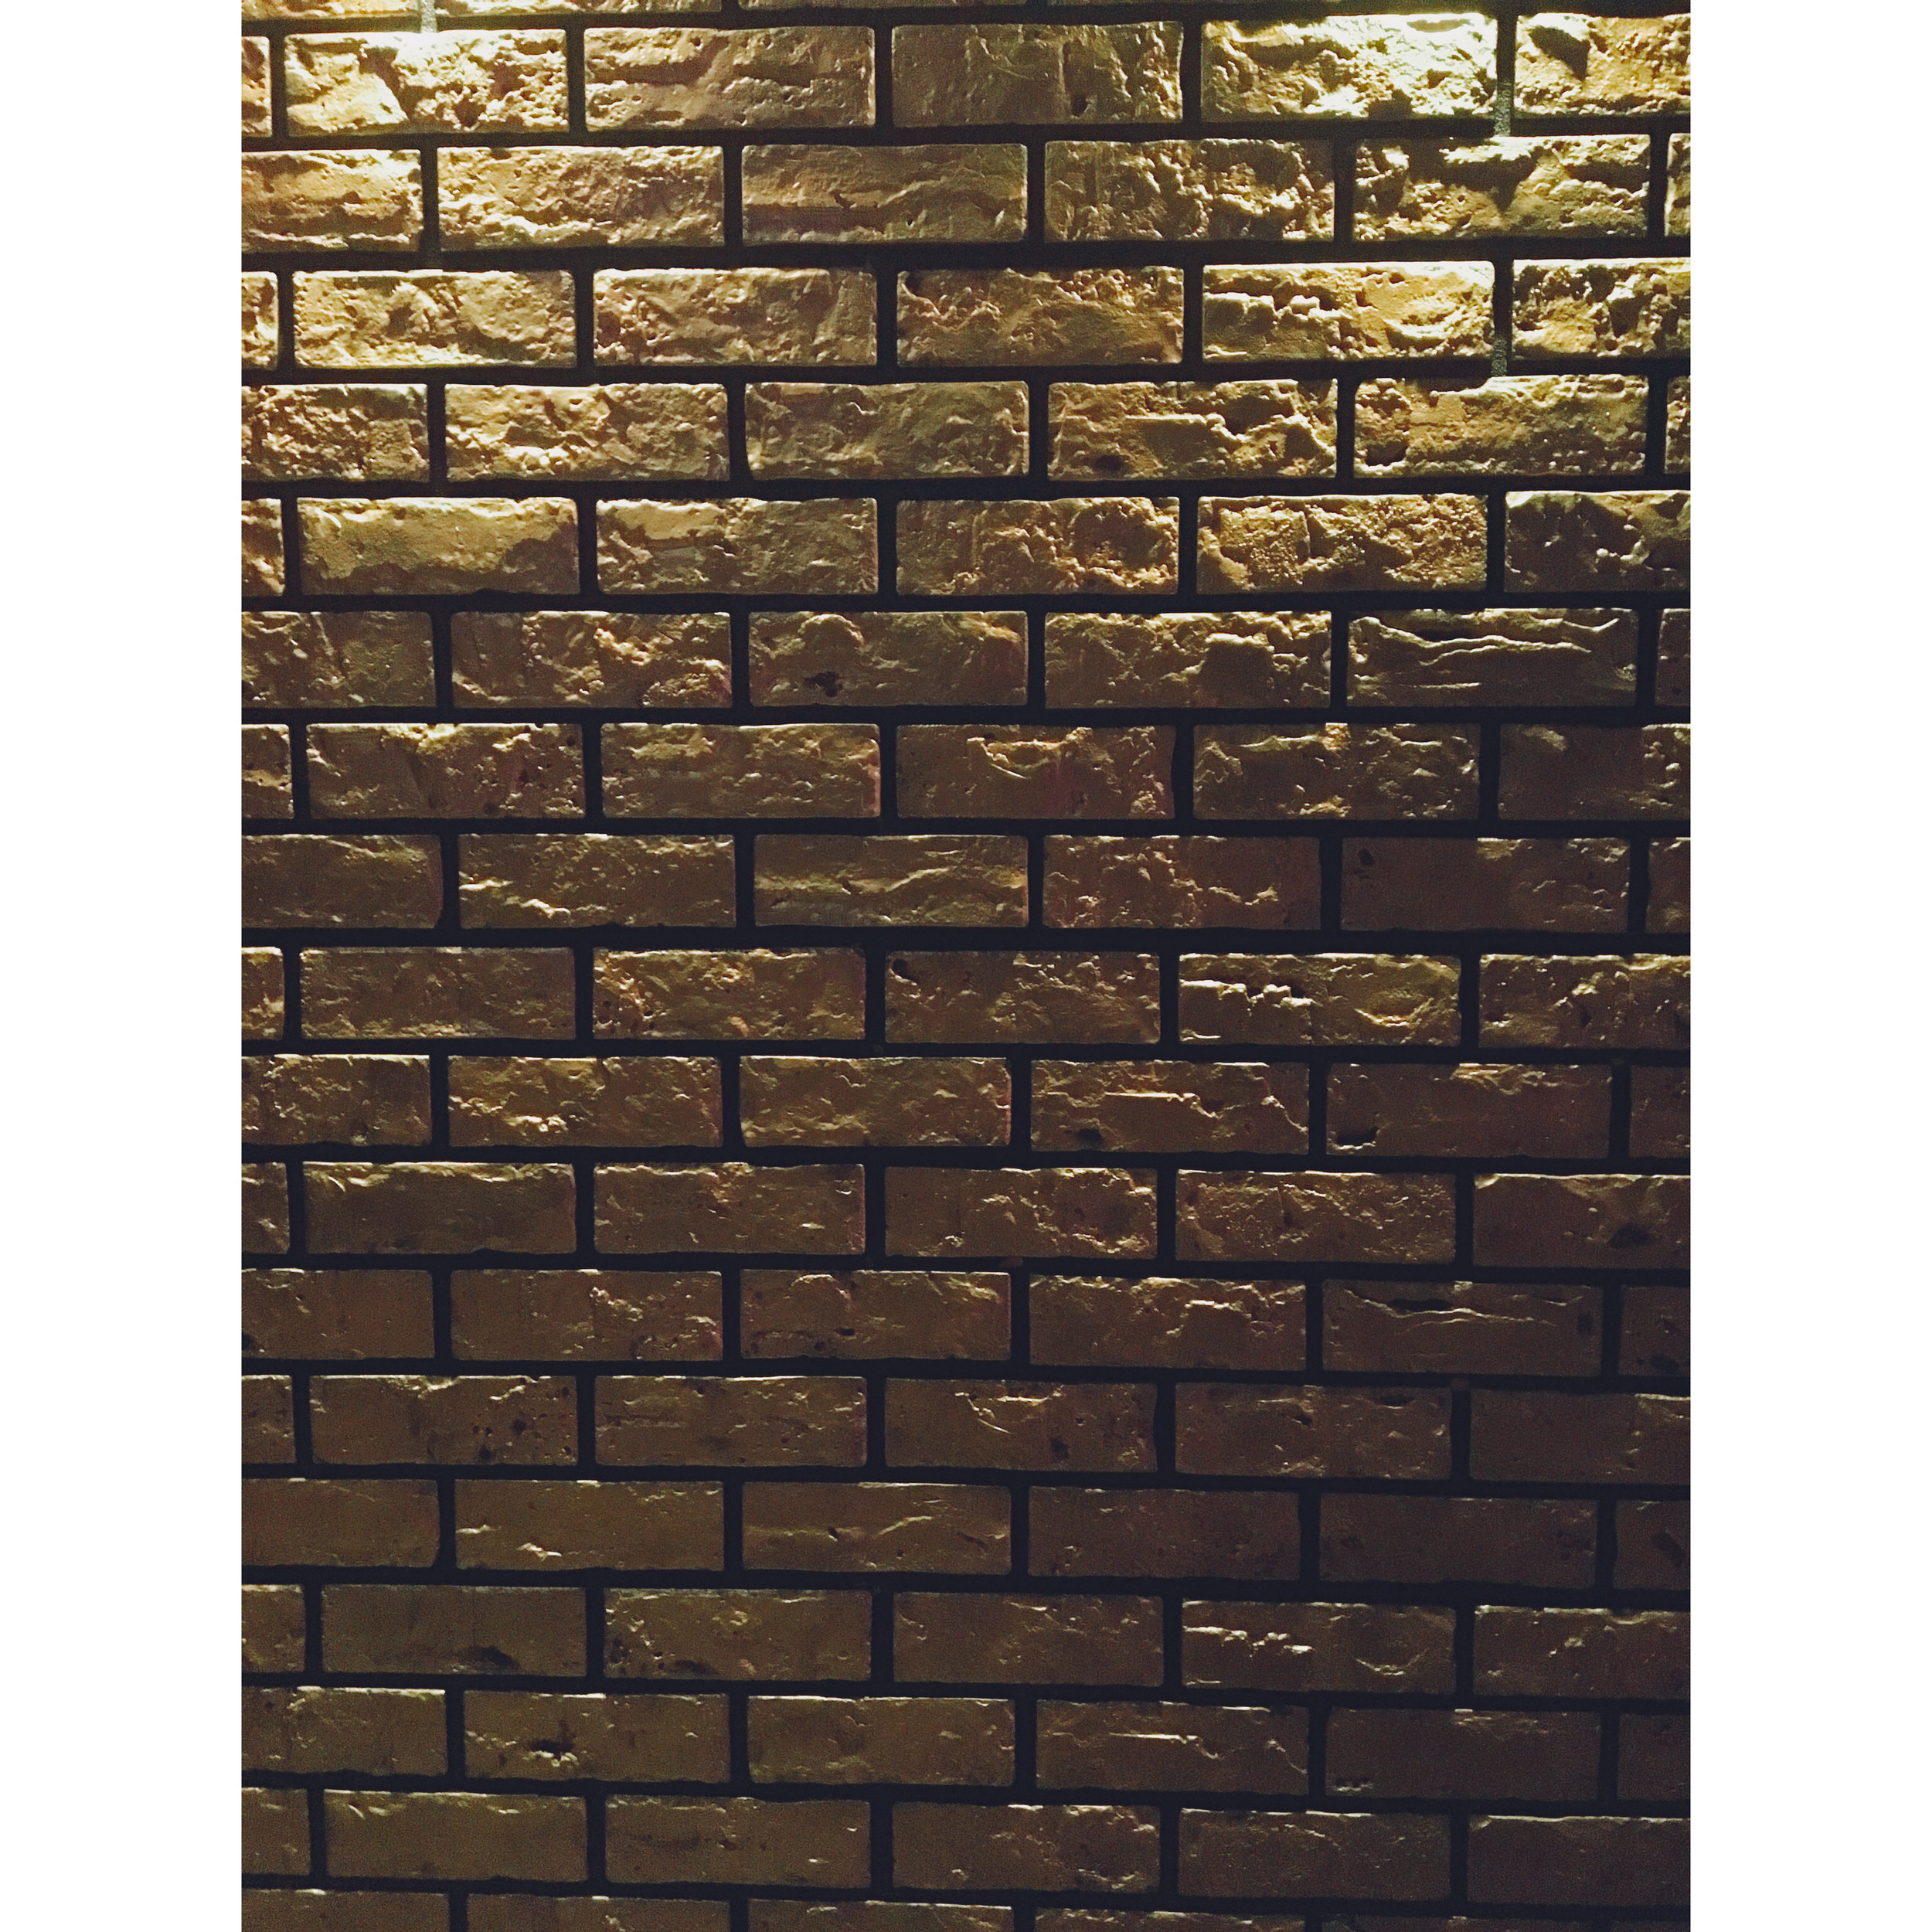  gold brick wall 